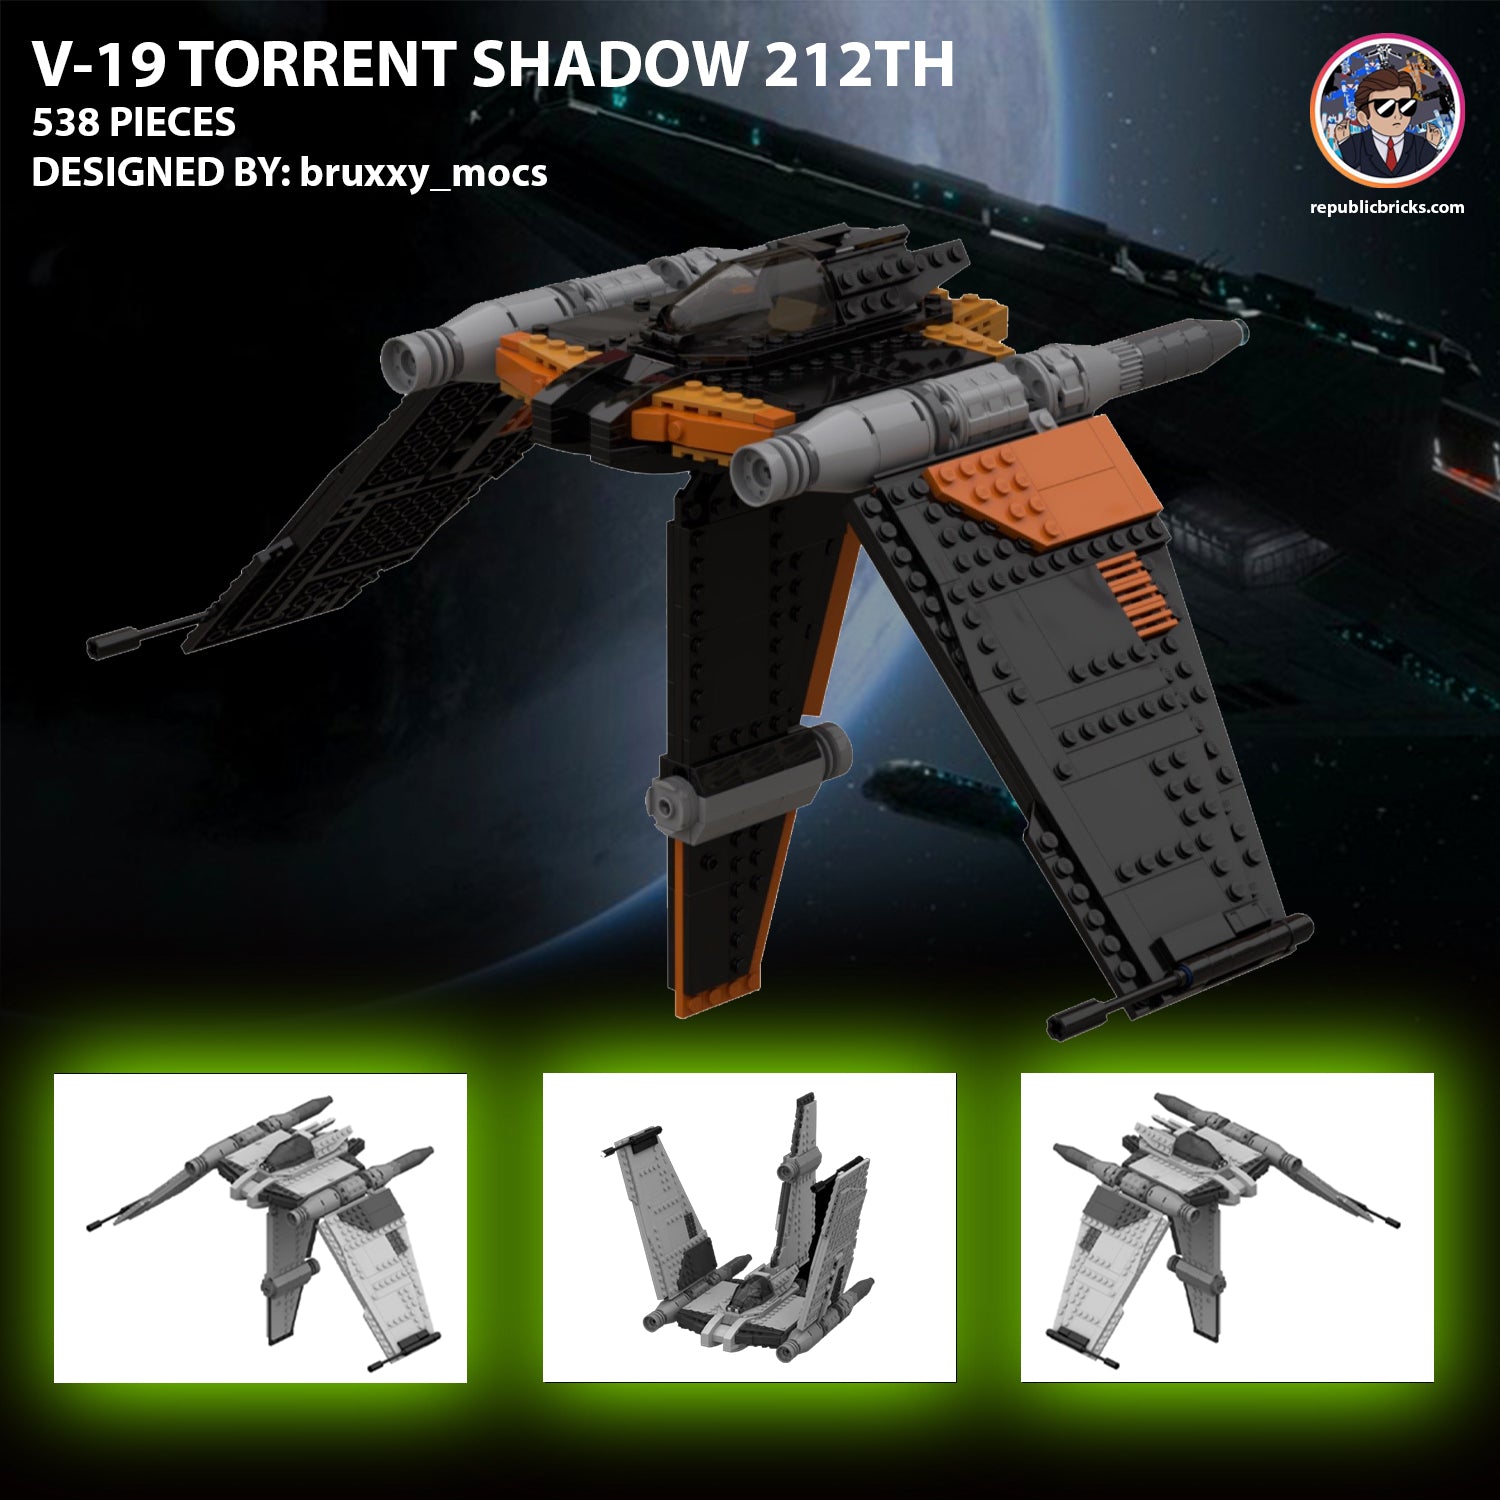 15614: V-19 TORRENT V3 (SHADOW 212TH)